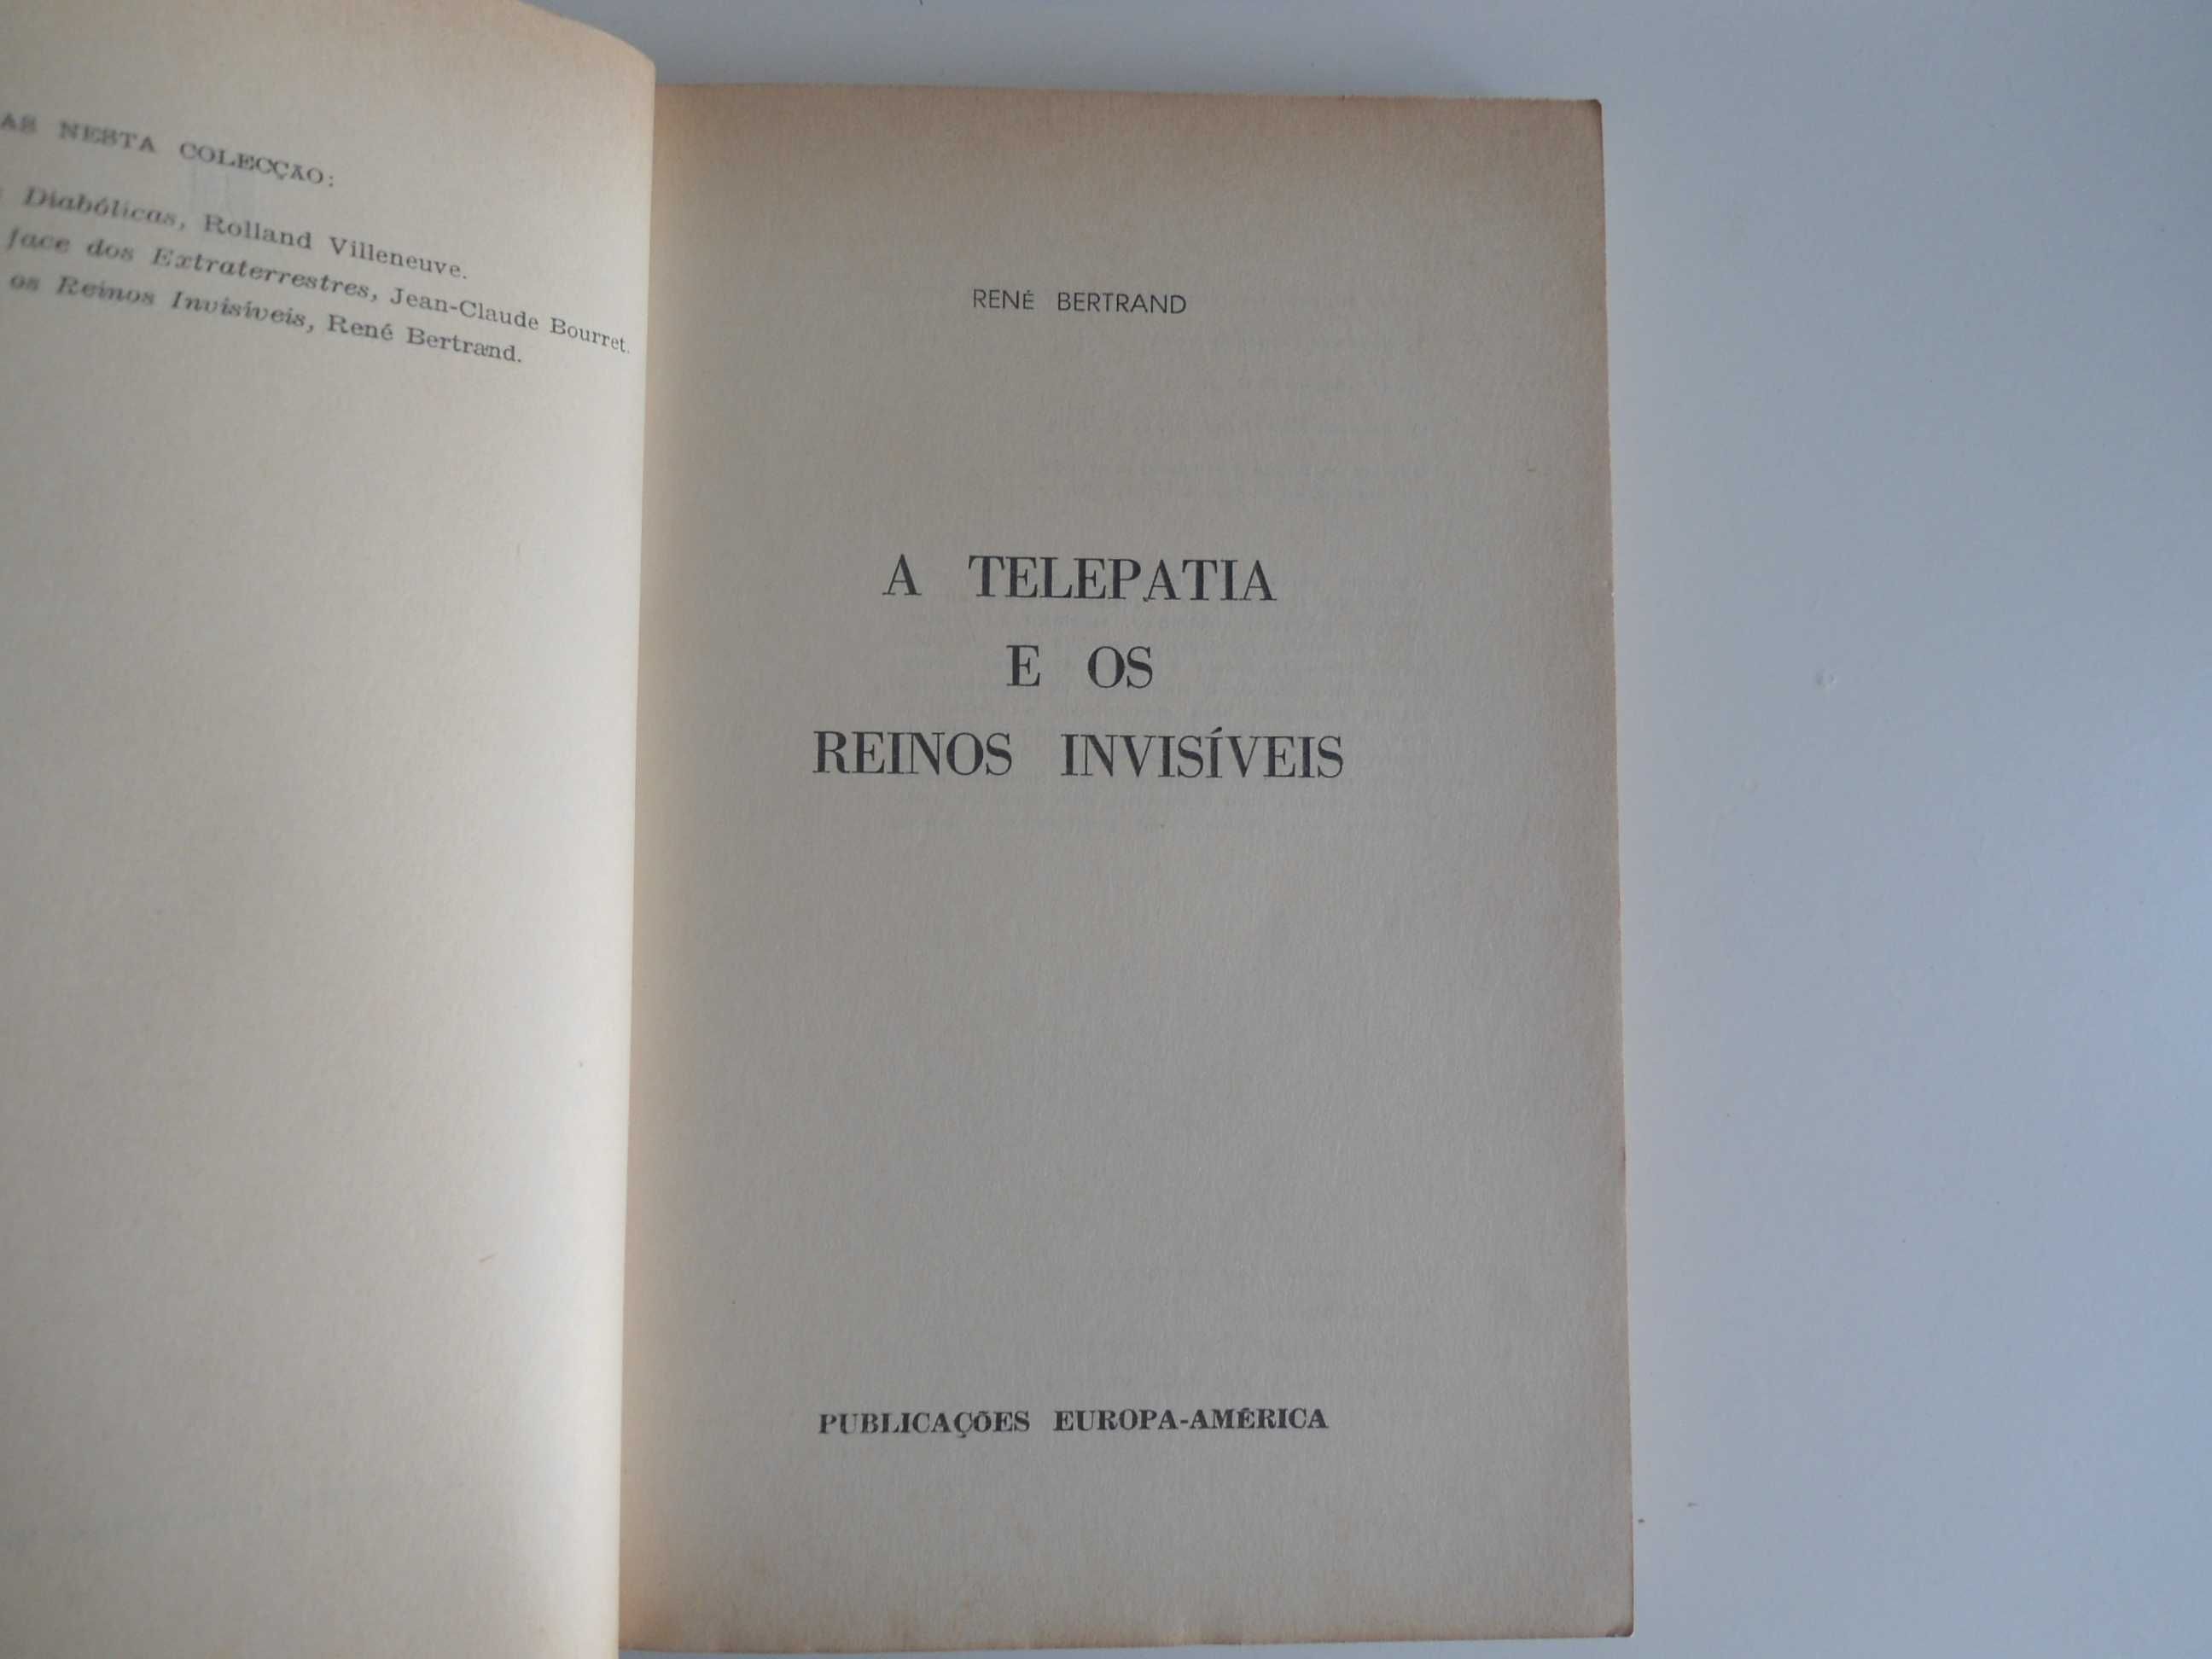 A  Telepatia e os reinos invisíveis de René Bertrand